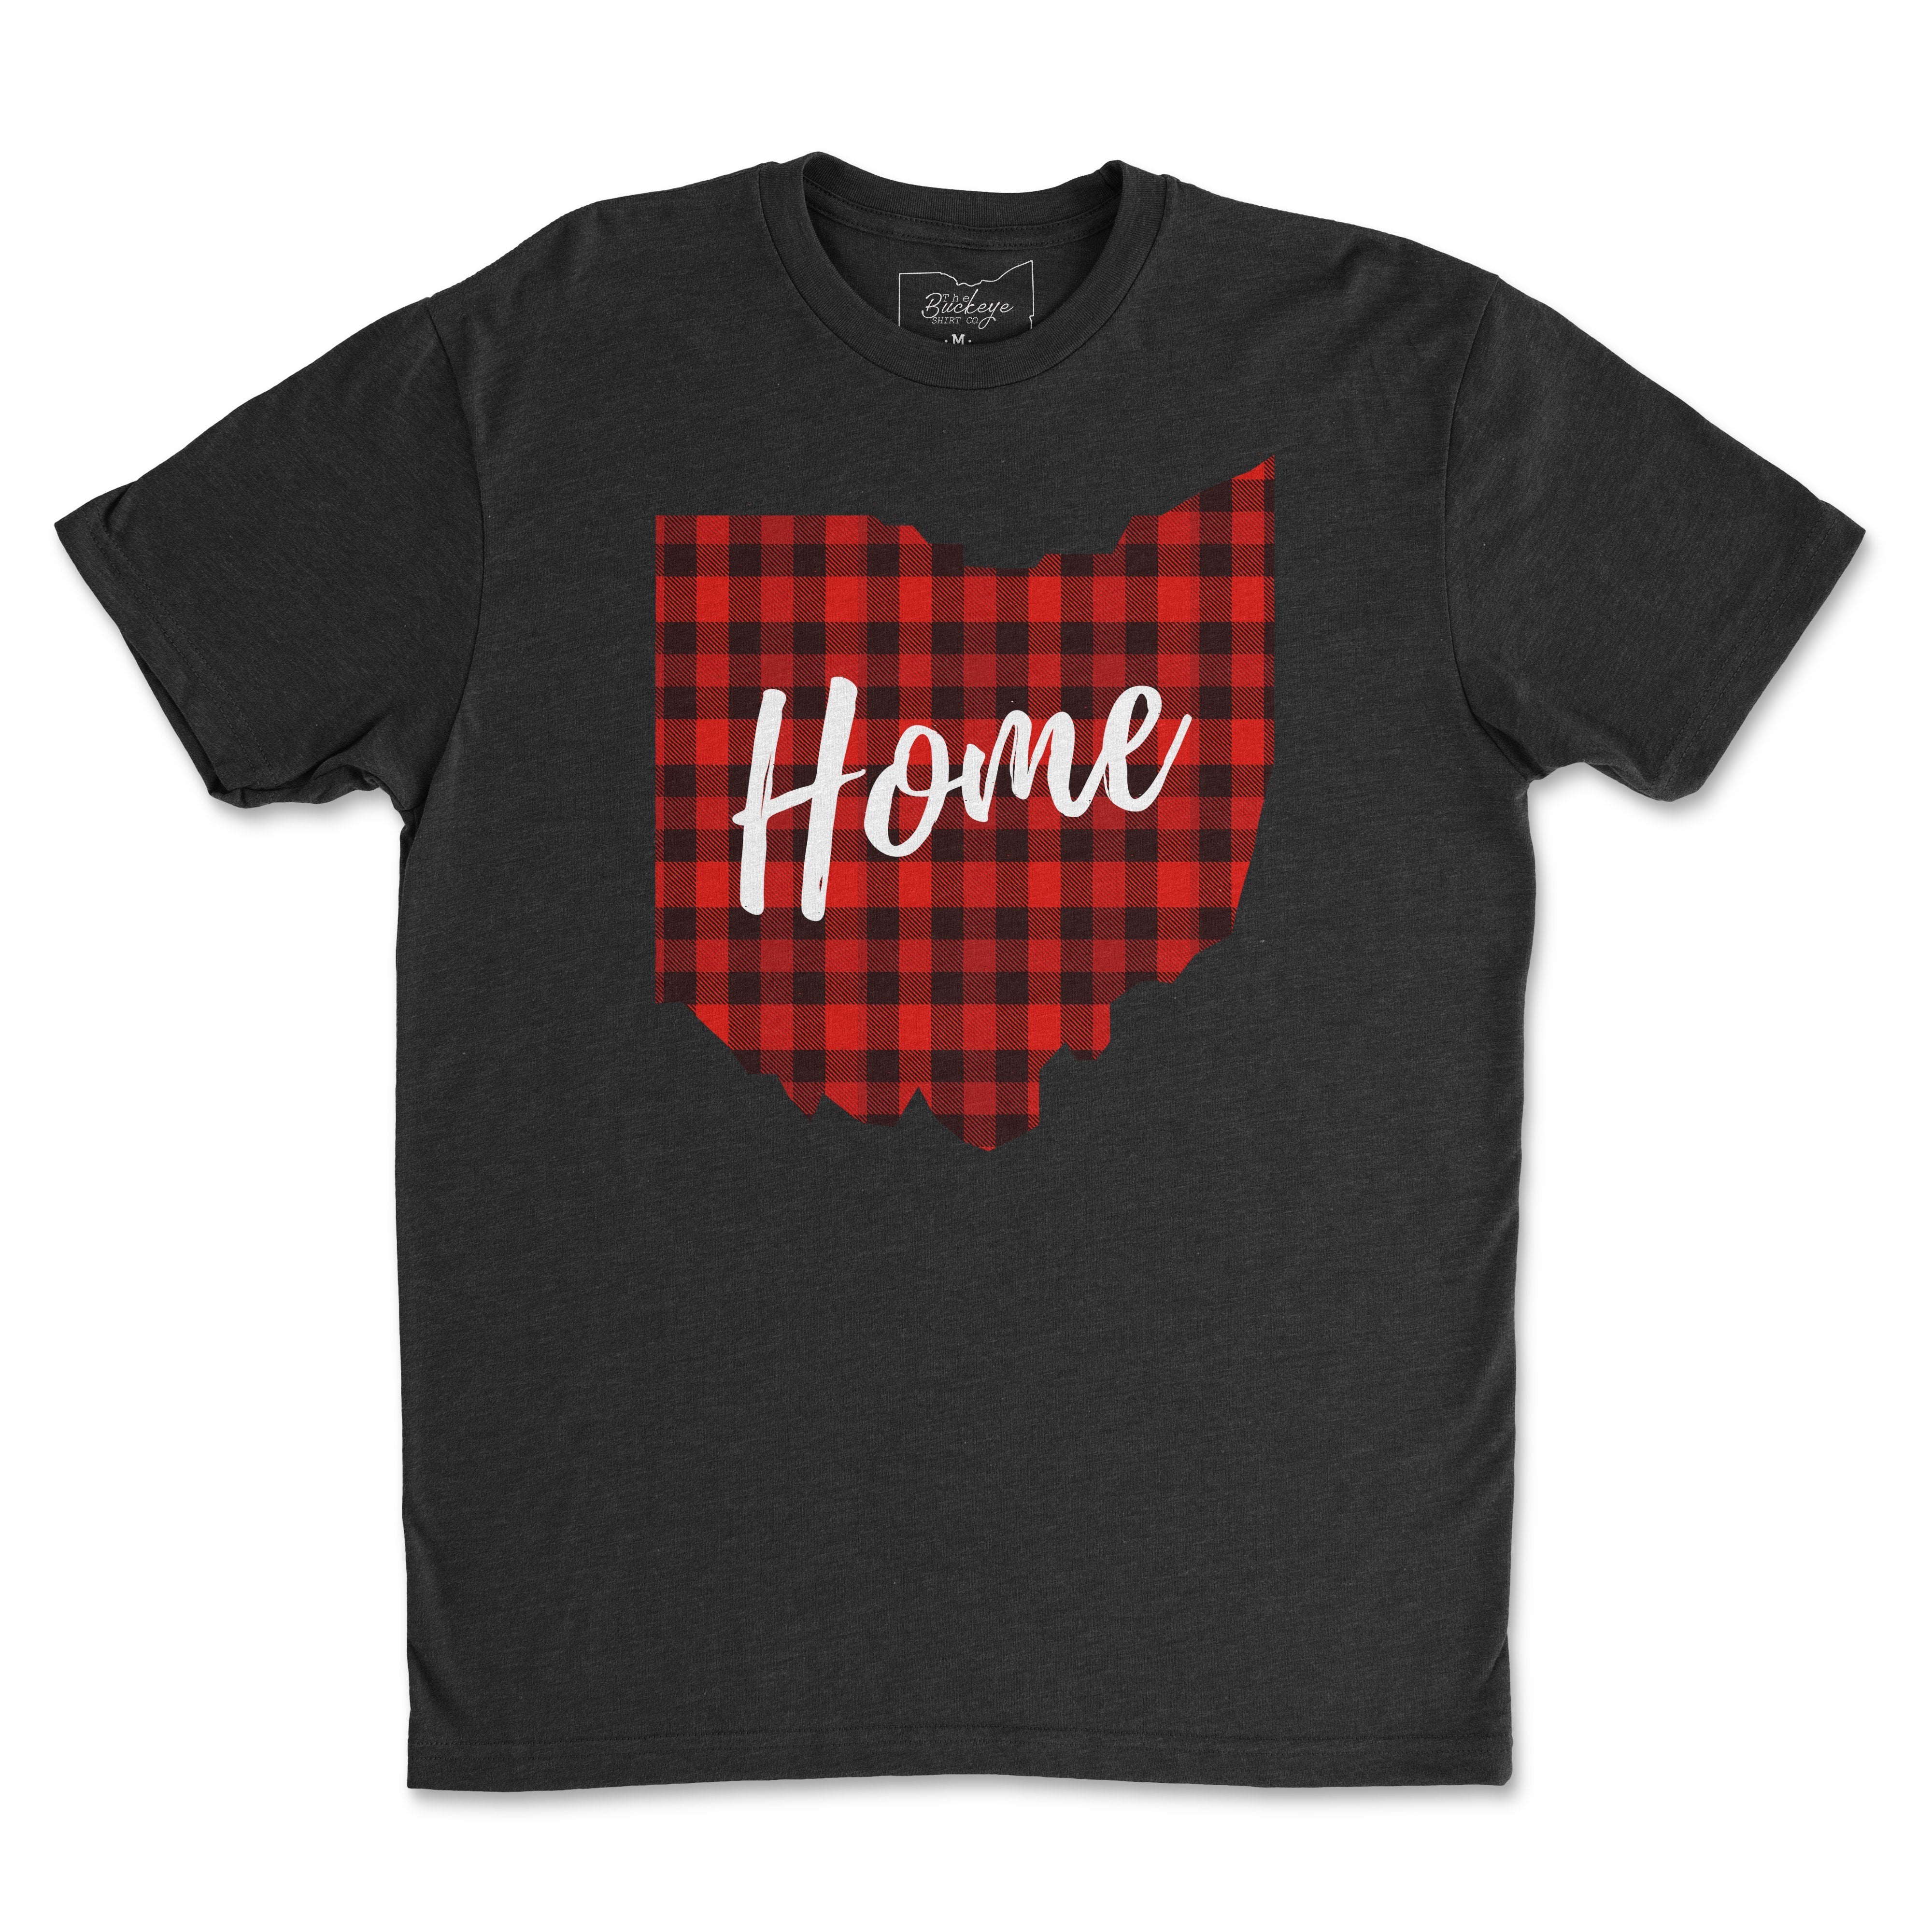 Plaid Ohio Home T-Shirt - Buckeye Shirt Co.